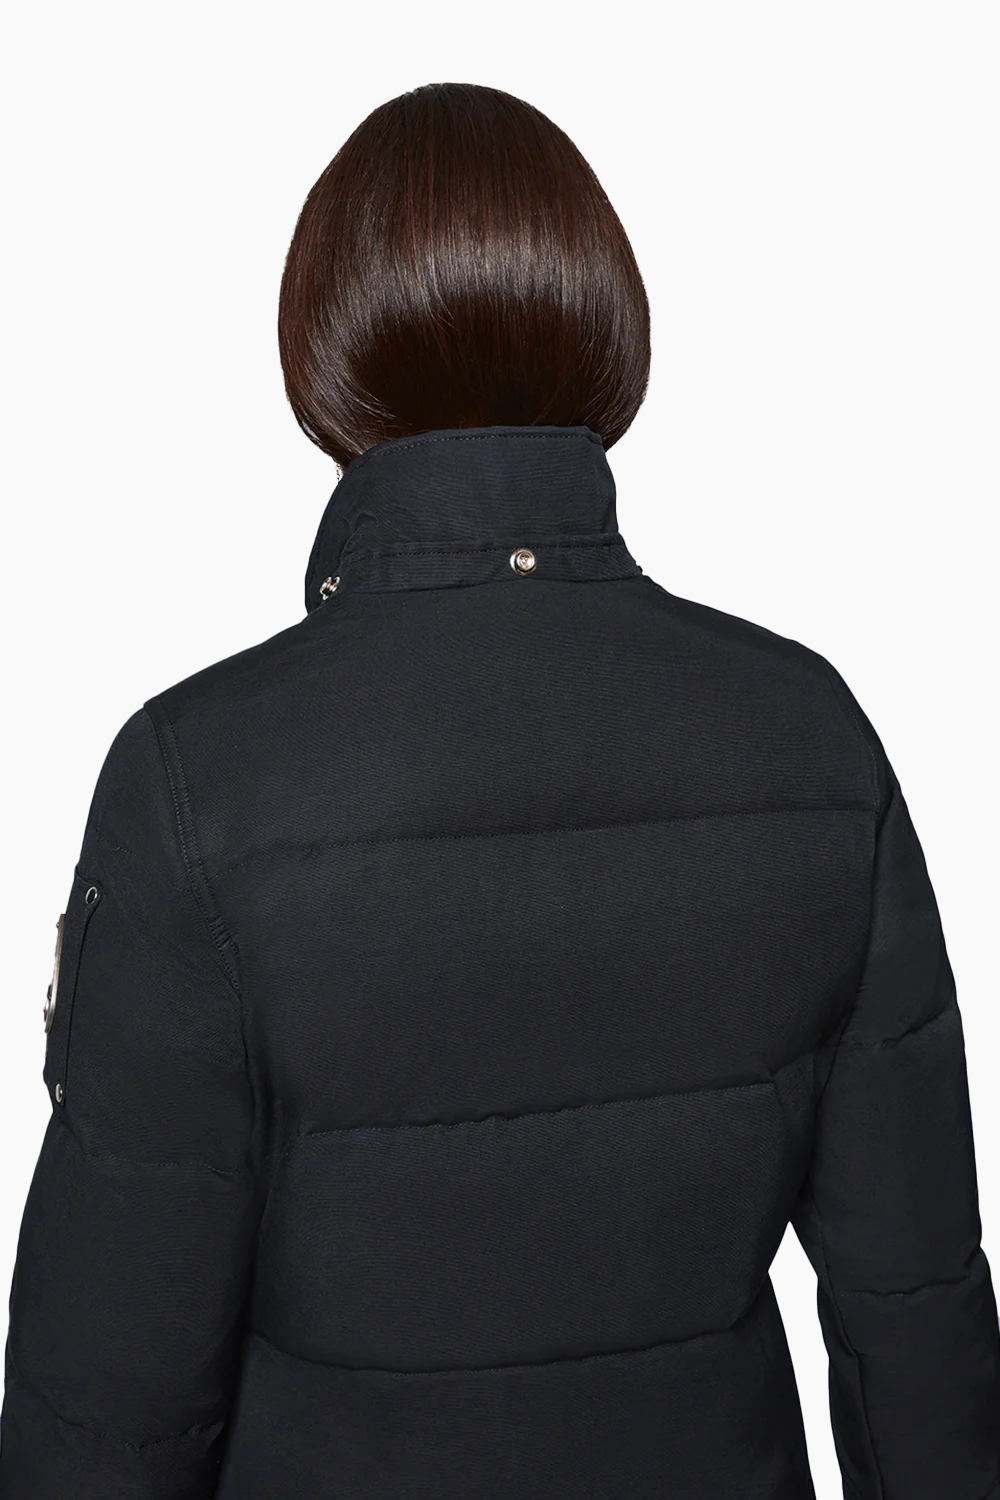 Moose Knuckles Ladies 3Q Jacket in Black with Black fur